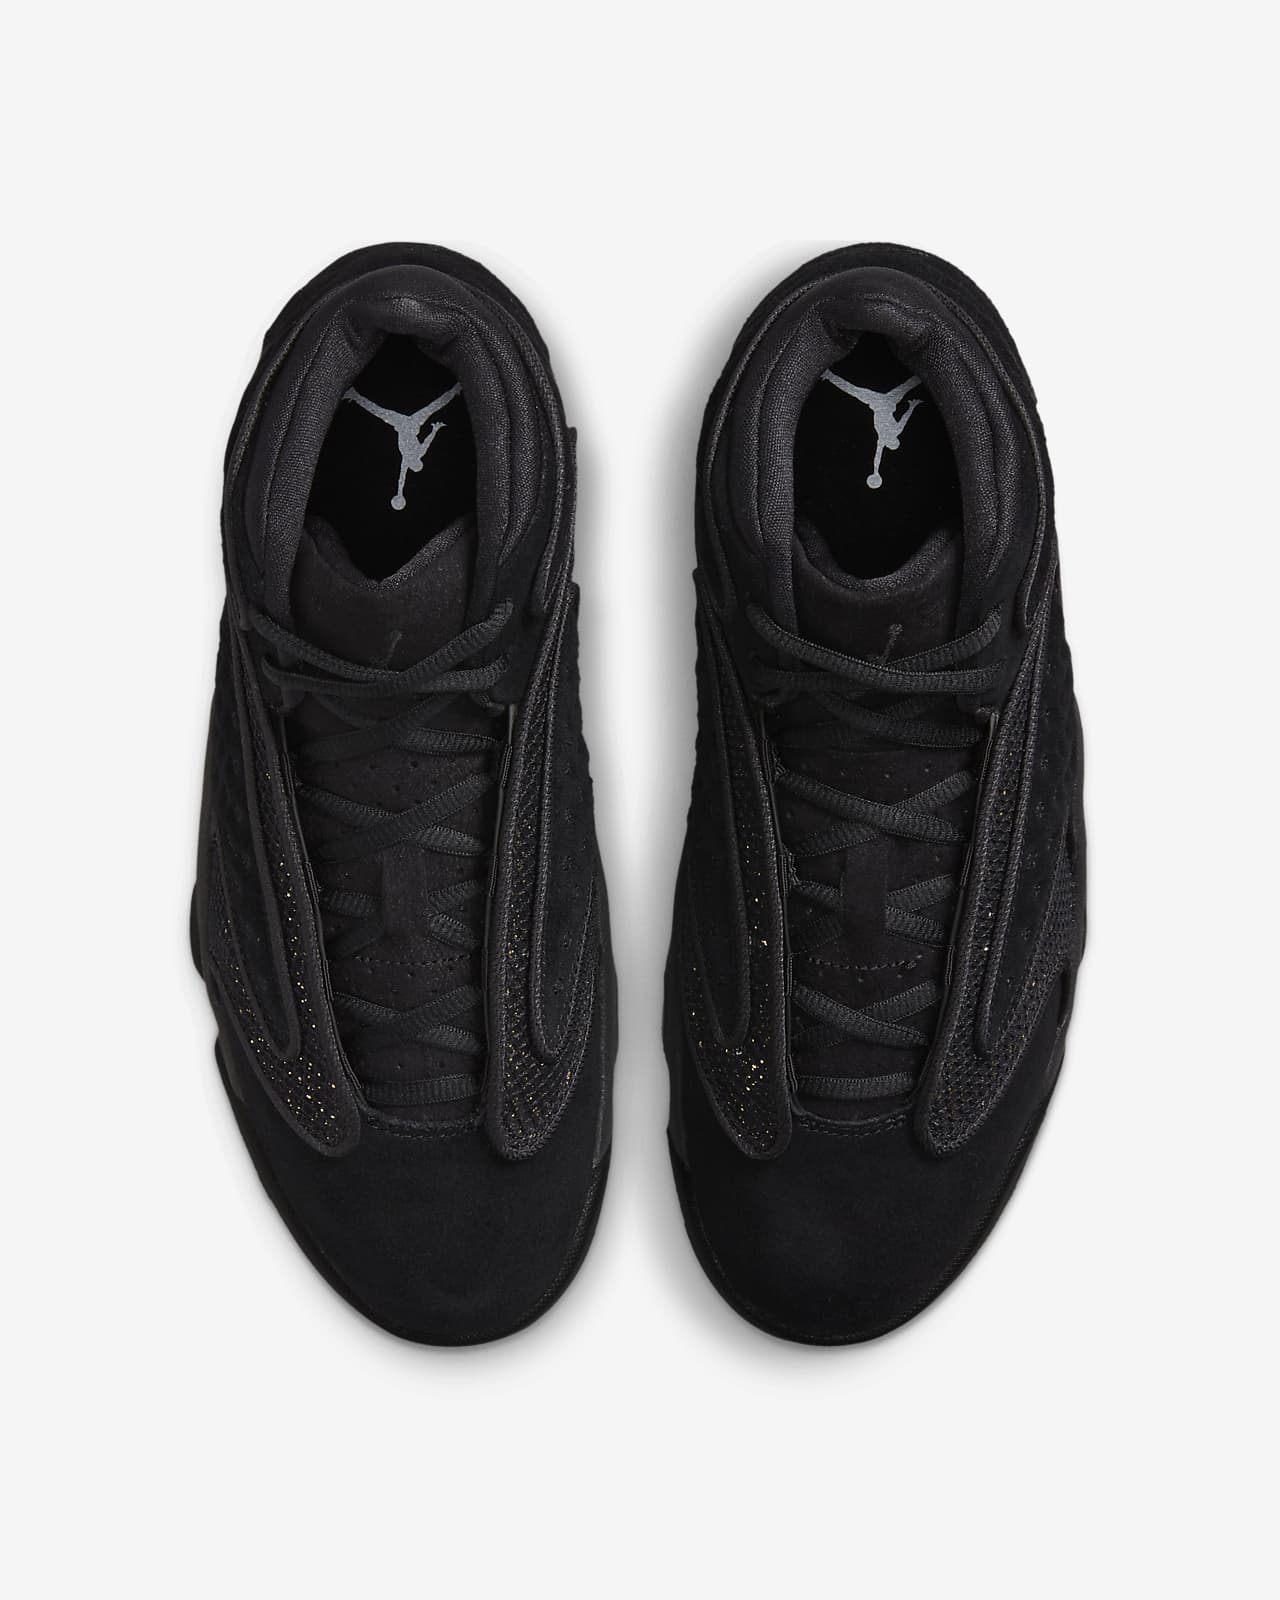 black jordans shoes for women